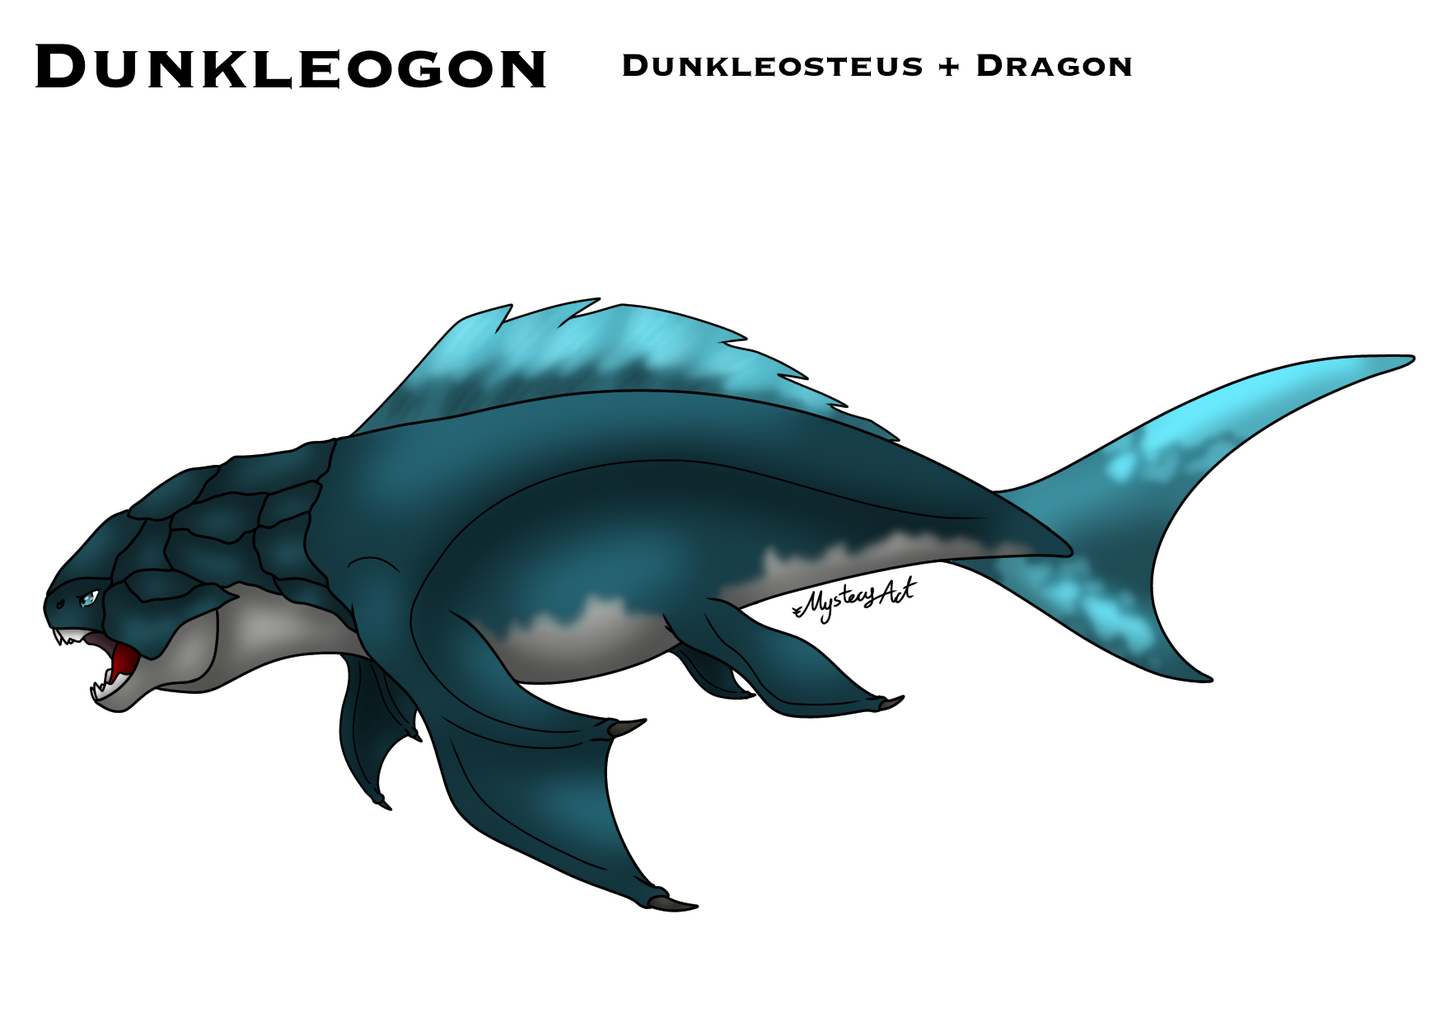 Dunkleogon